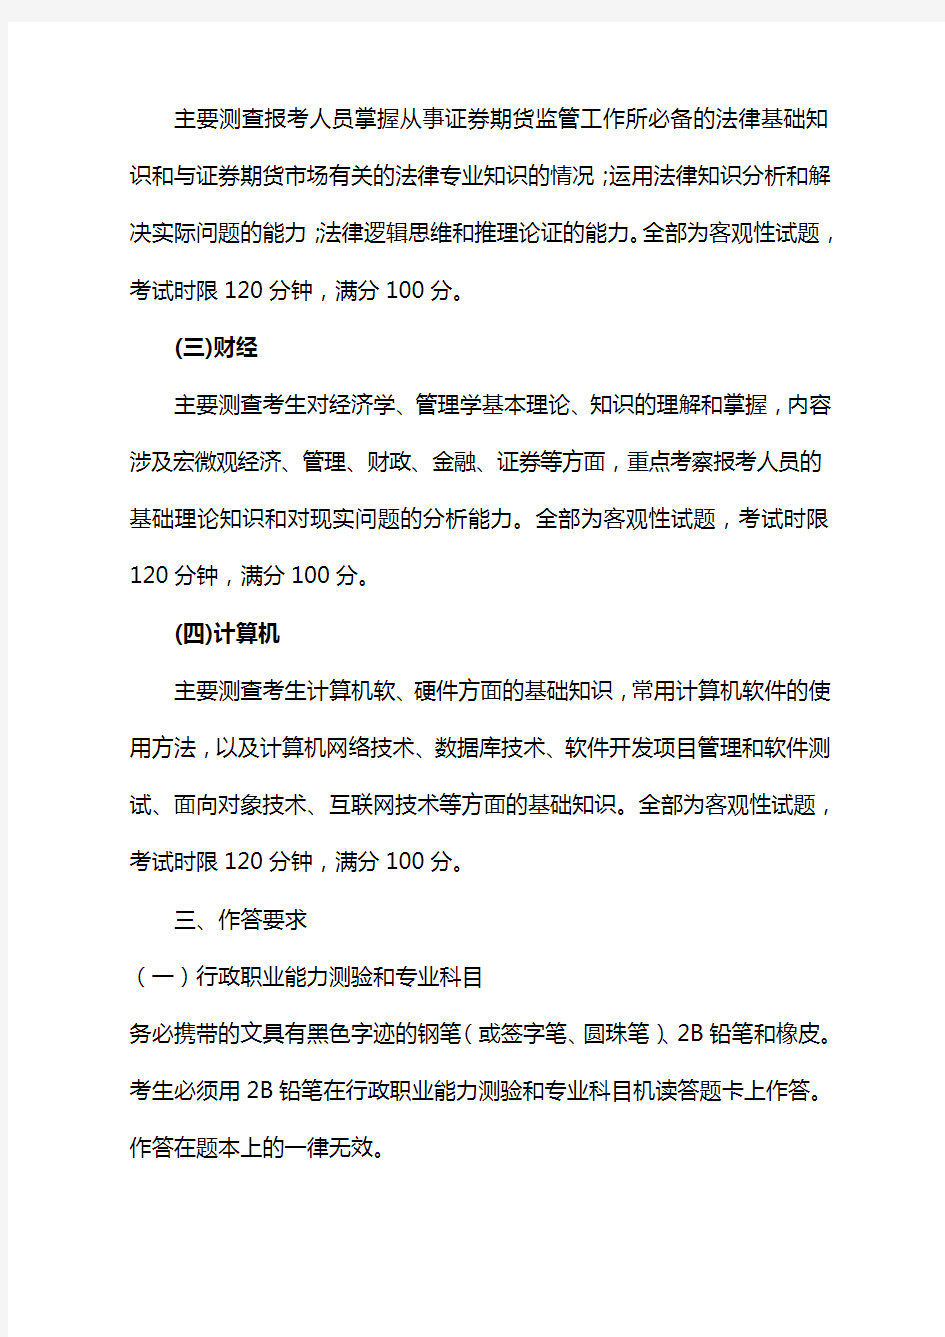 中国证监会派出机构公开招考工作人员笔试考试大纲中